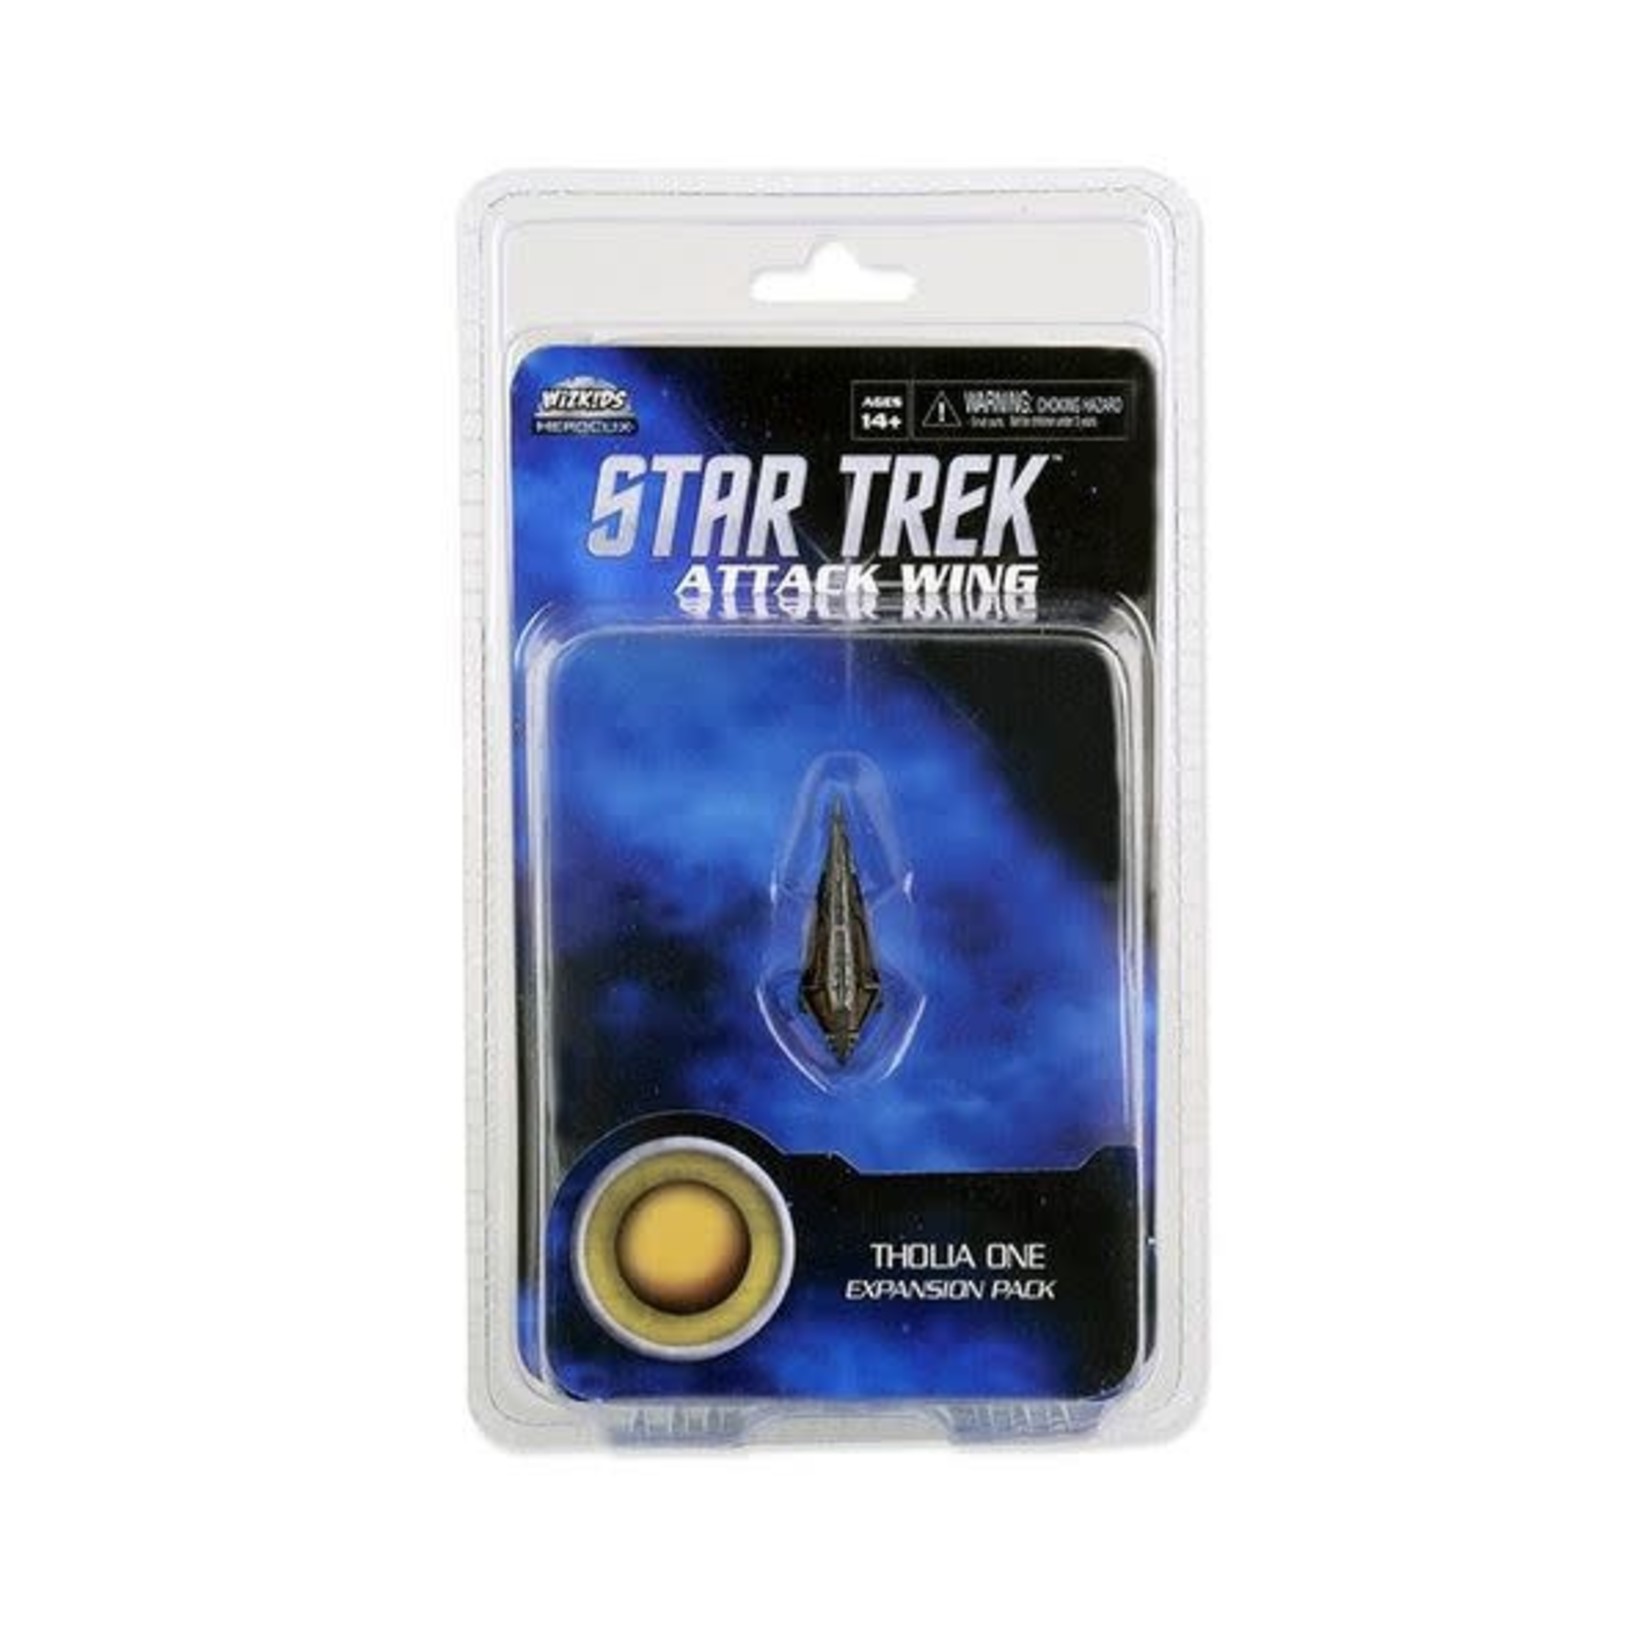 WIZKIDS/NECA Star Trek Attack Wing Tholia One Starship